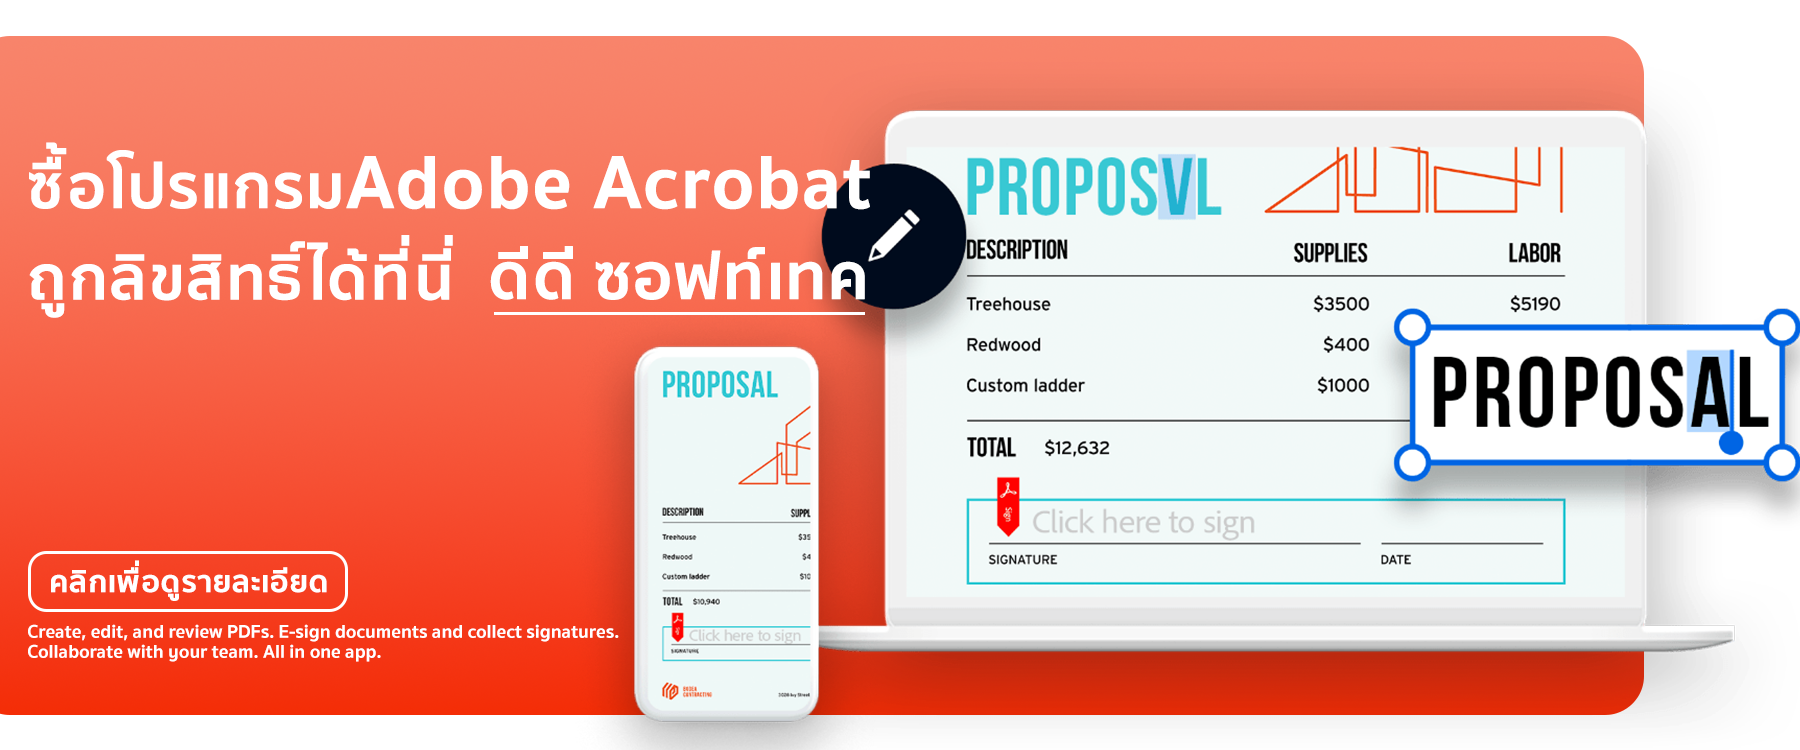 Adobe Acrobat เป็นโปรแกรมที่ใช้สำหรับการสร้างแก้ไข และแชร์ไฟล์ PDF